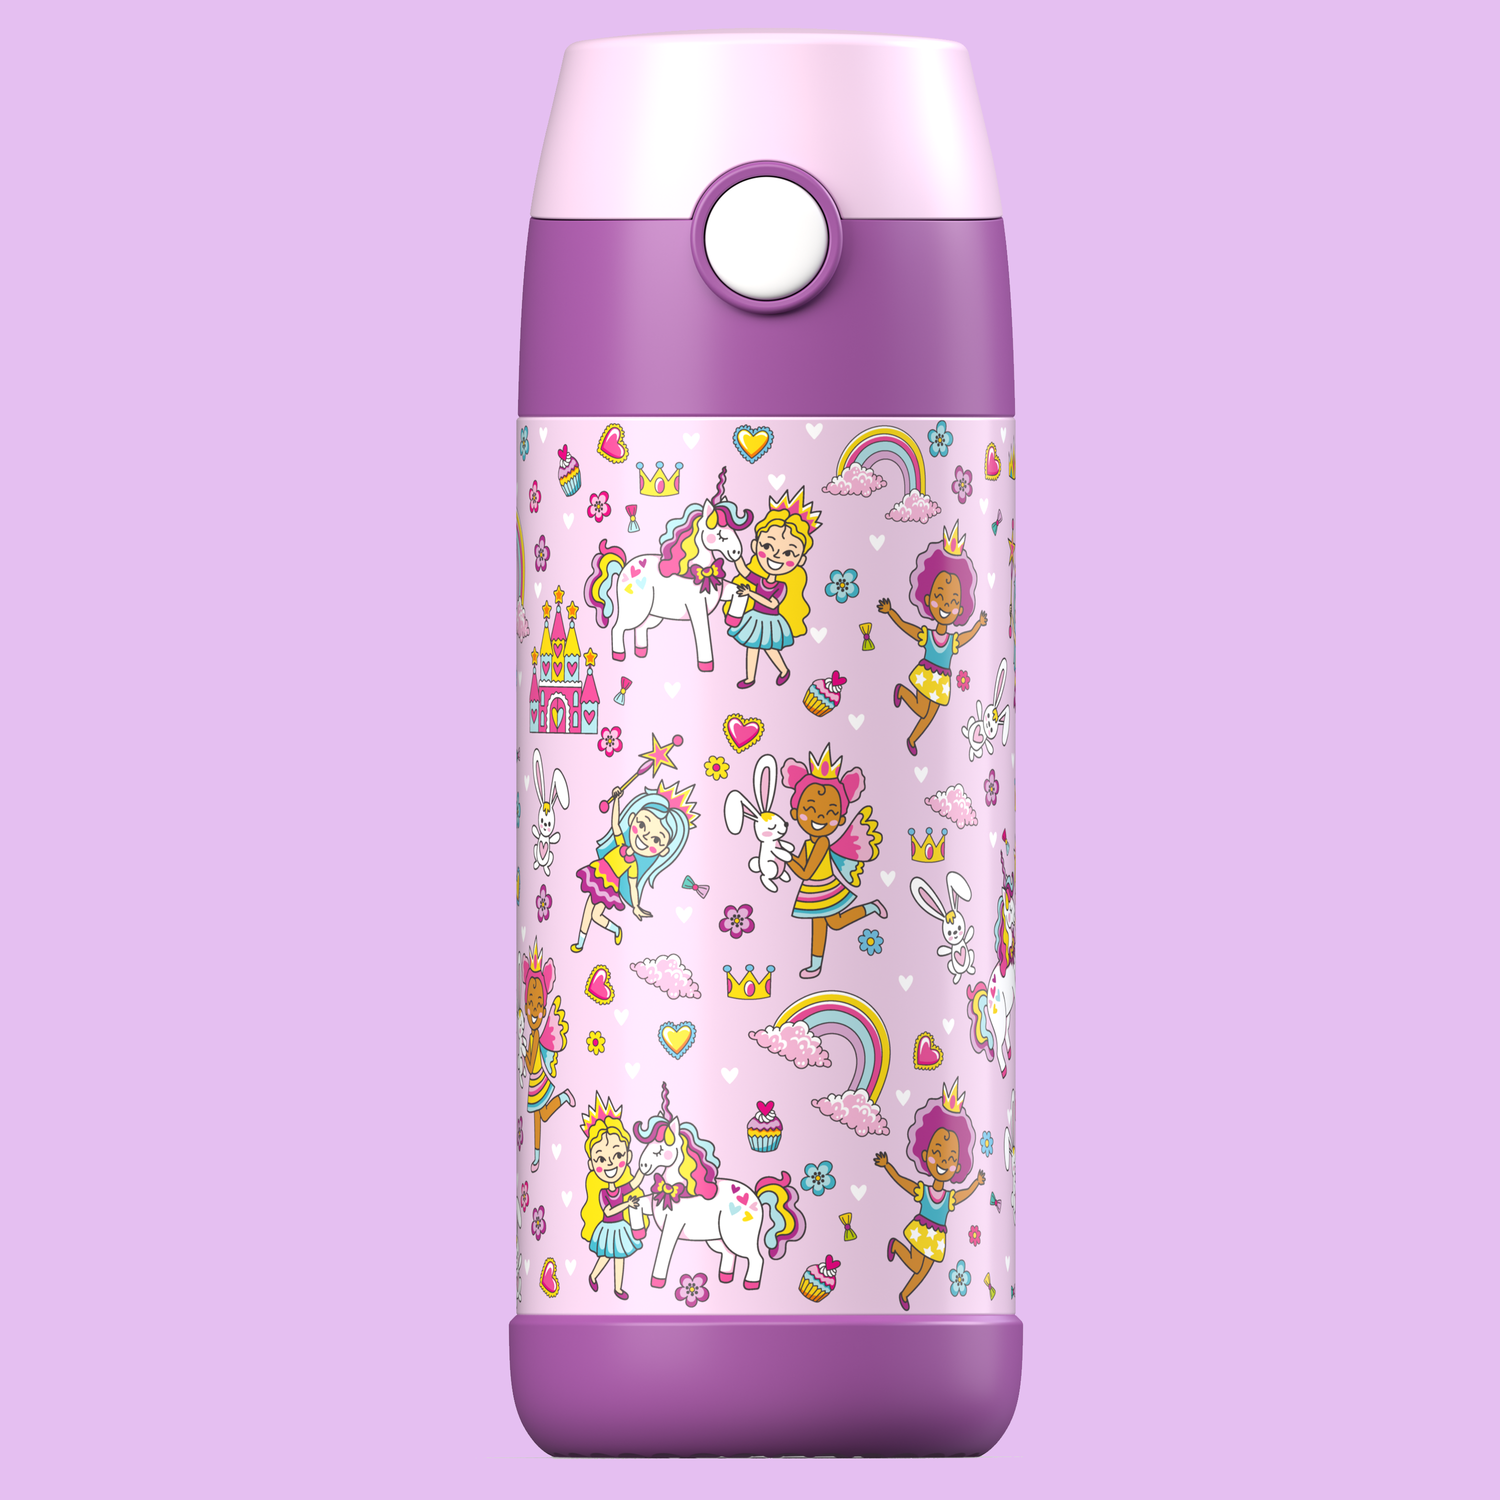 MIKI Trinkflasche – JARLSON Trinkflaschen & Lunchboxen